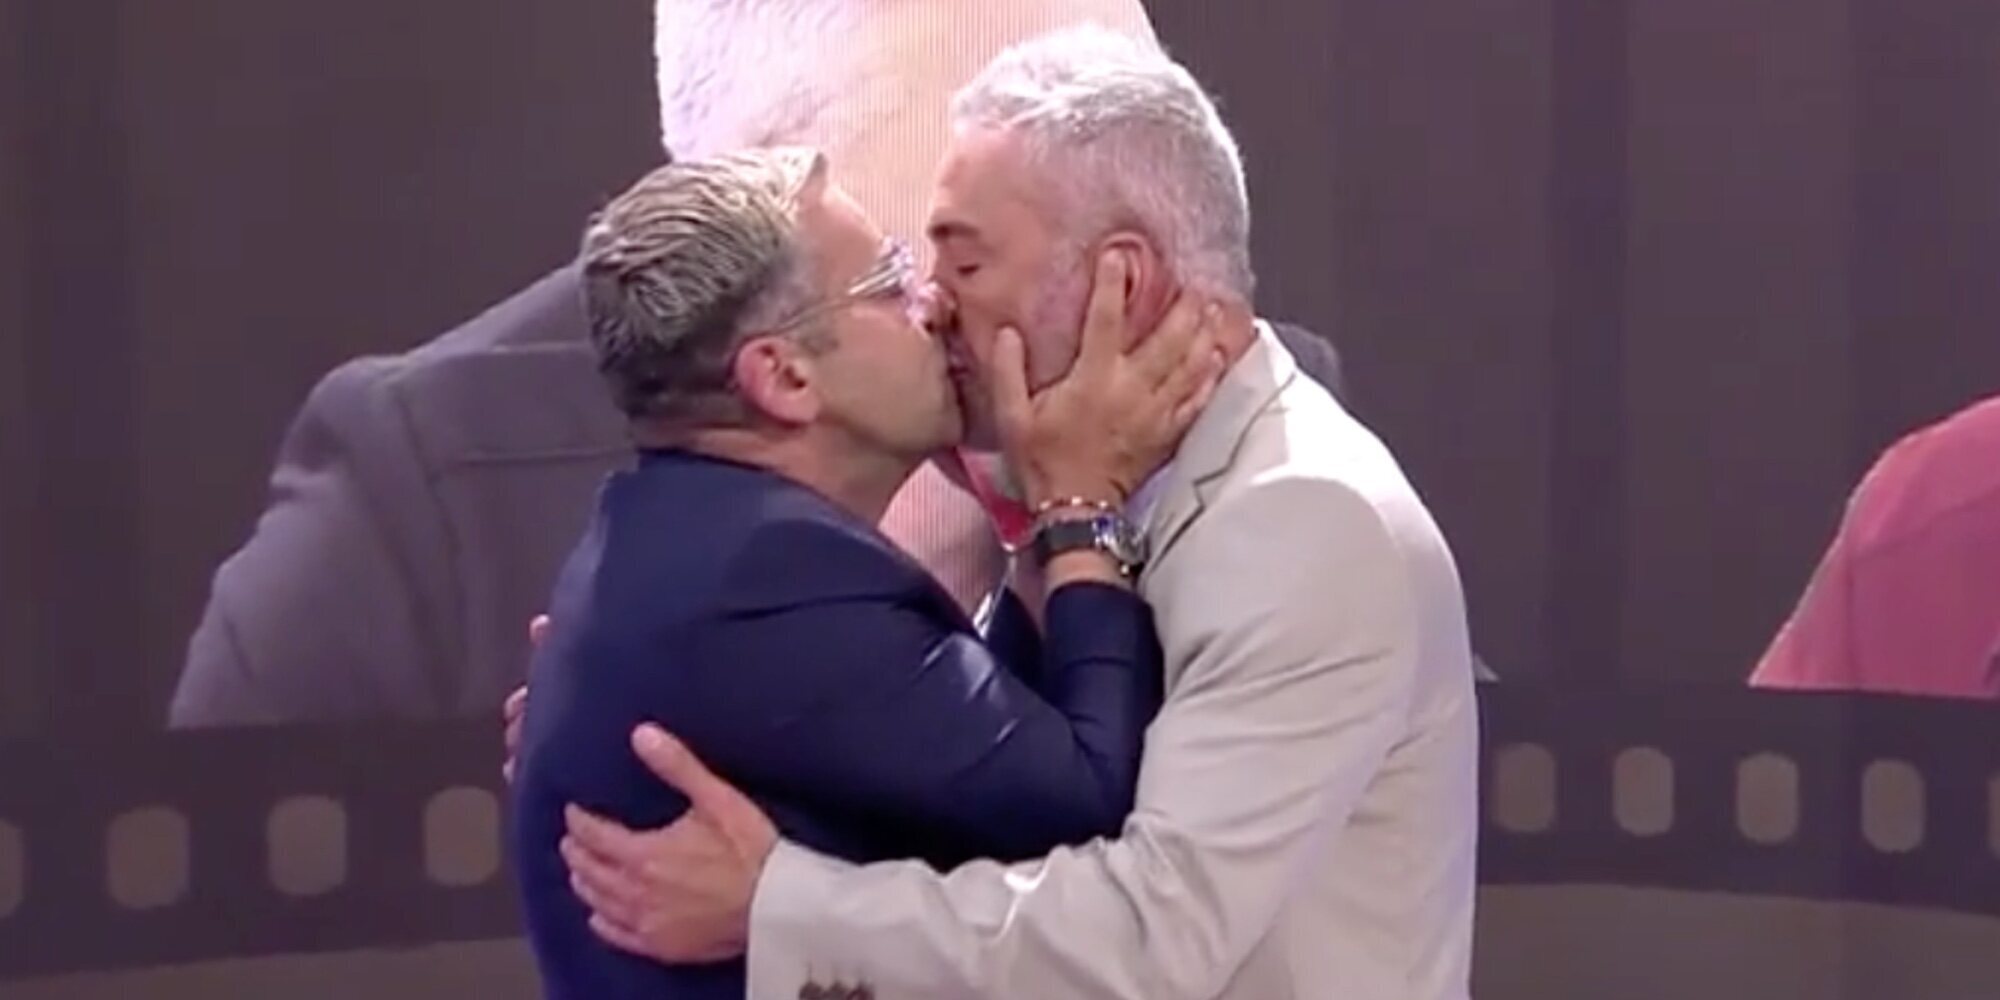 Kiko Hernández y Jorge Javier Vázquez protagonizan un apasionado beso 'con lengua' en el plató de 'Sálvame'